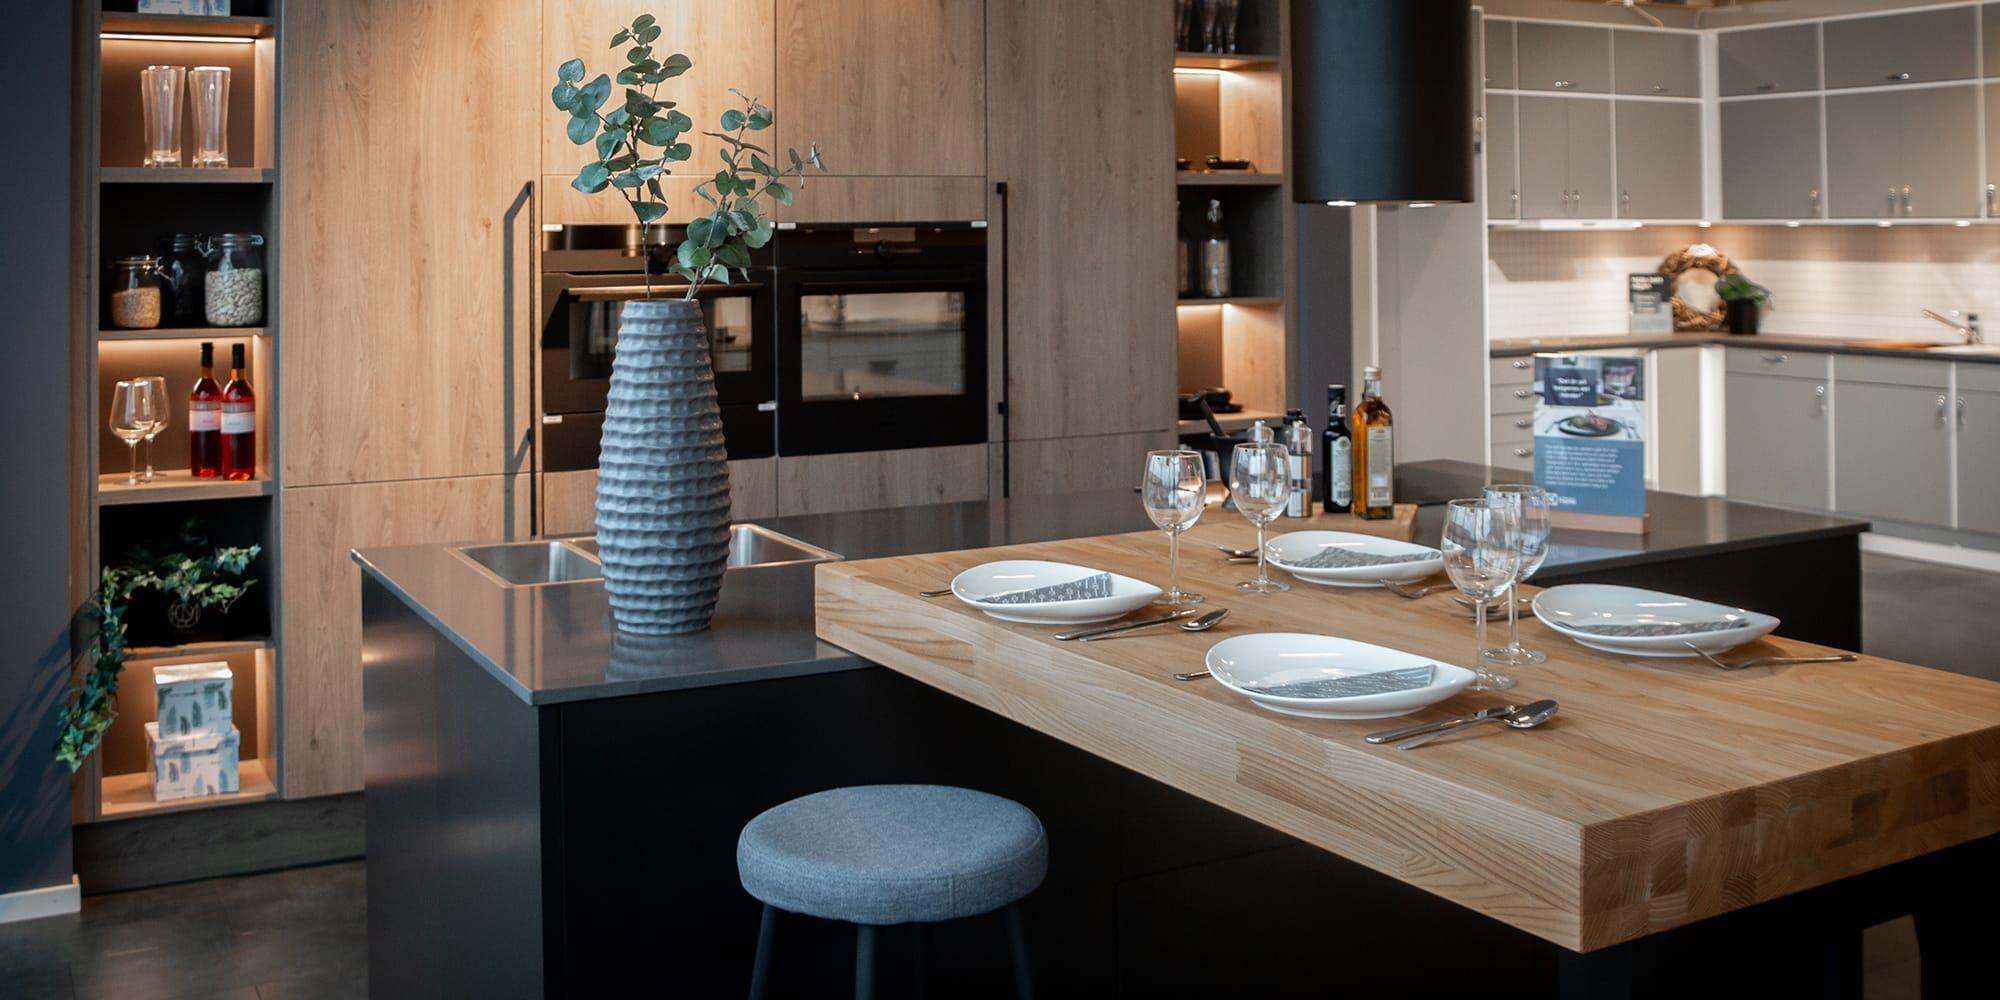 Electrolux Home på Stenalyckan har fokus på kök och vitvaror, men här finns även en cookshop med hushållsmaskiner och husgeråd – allt som behövs för husets viktigaste rum.